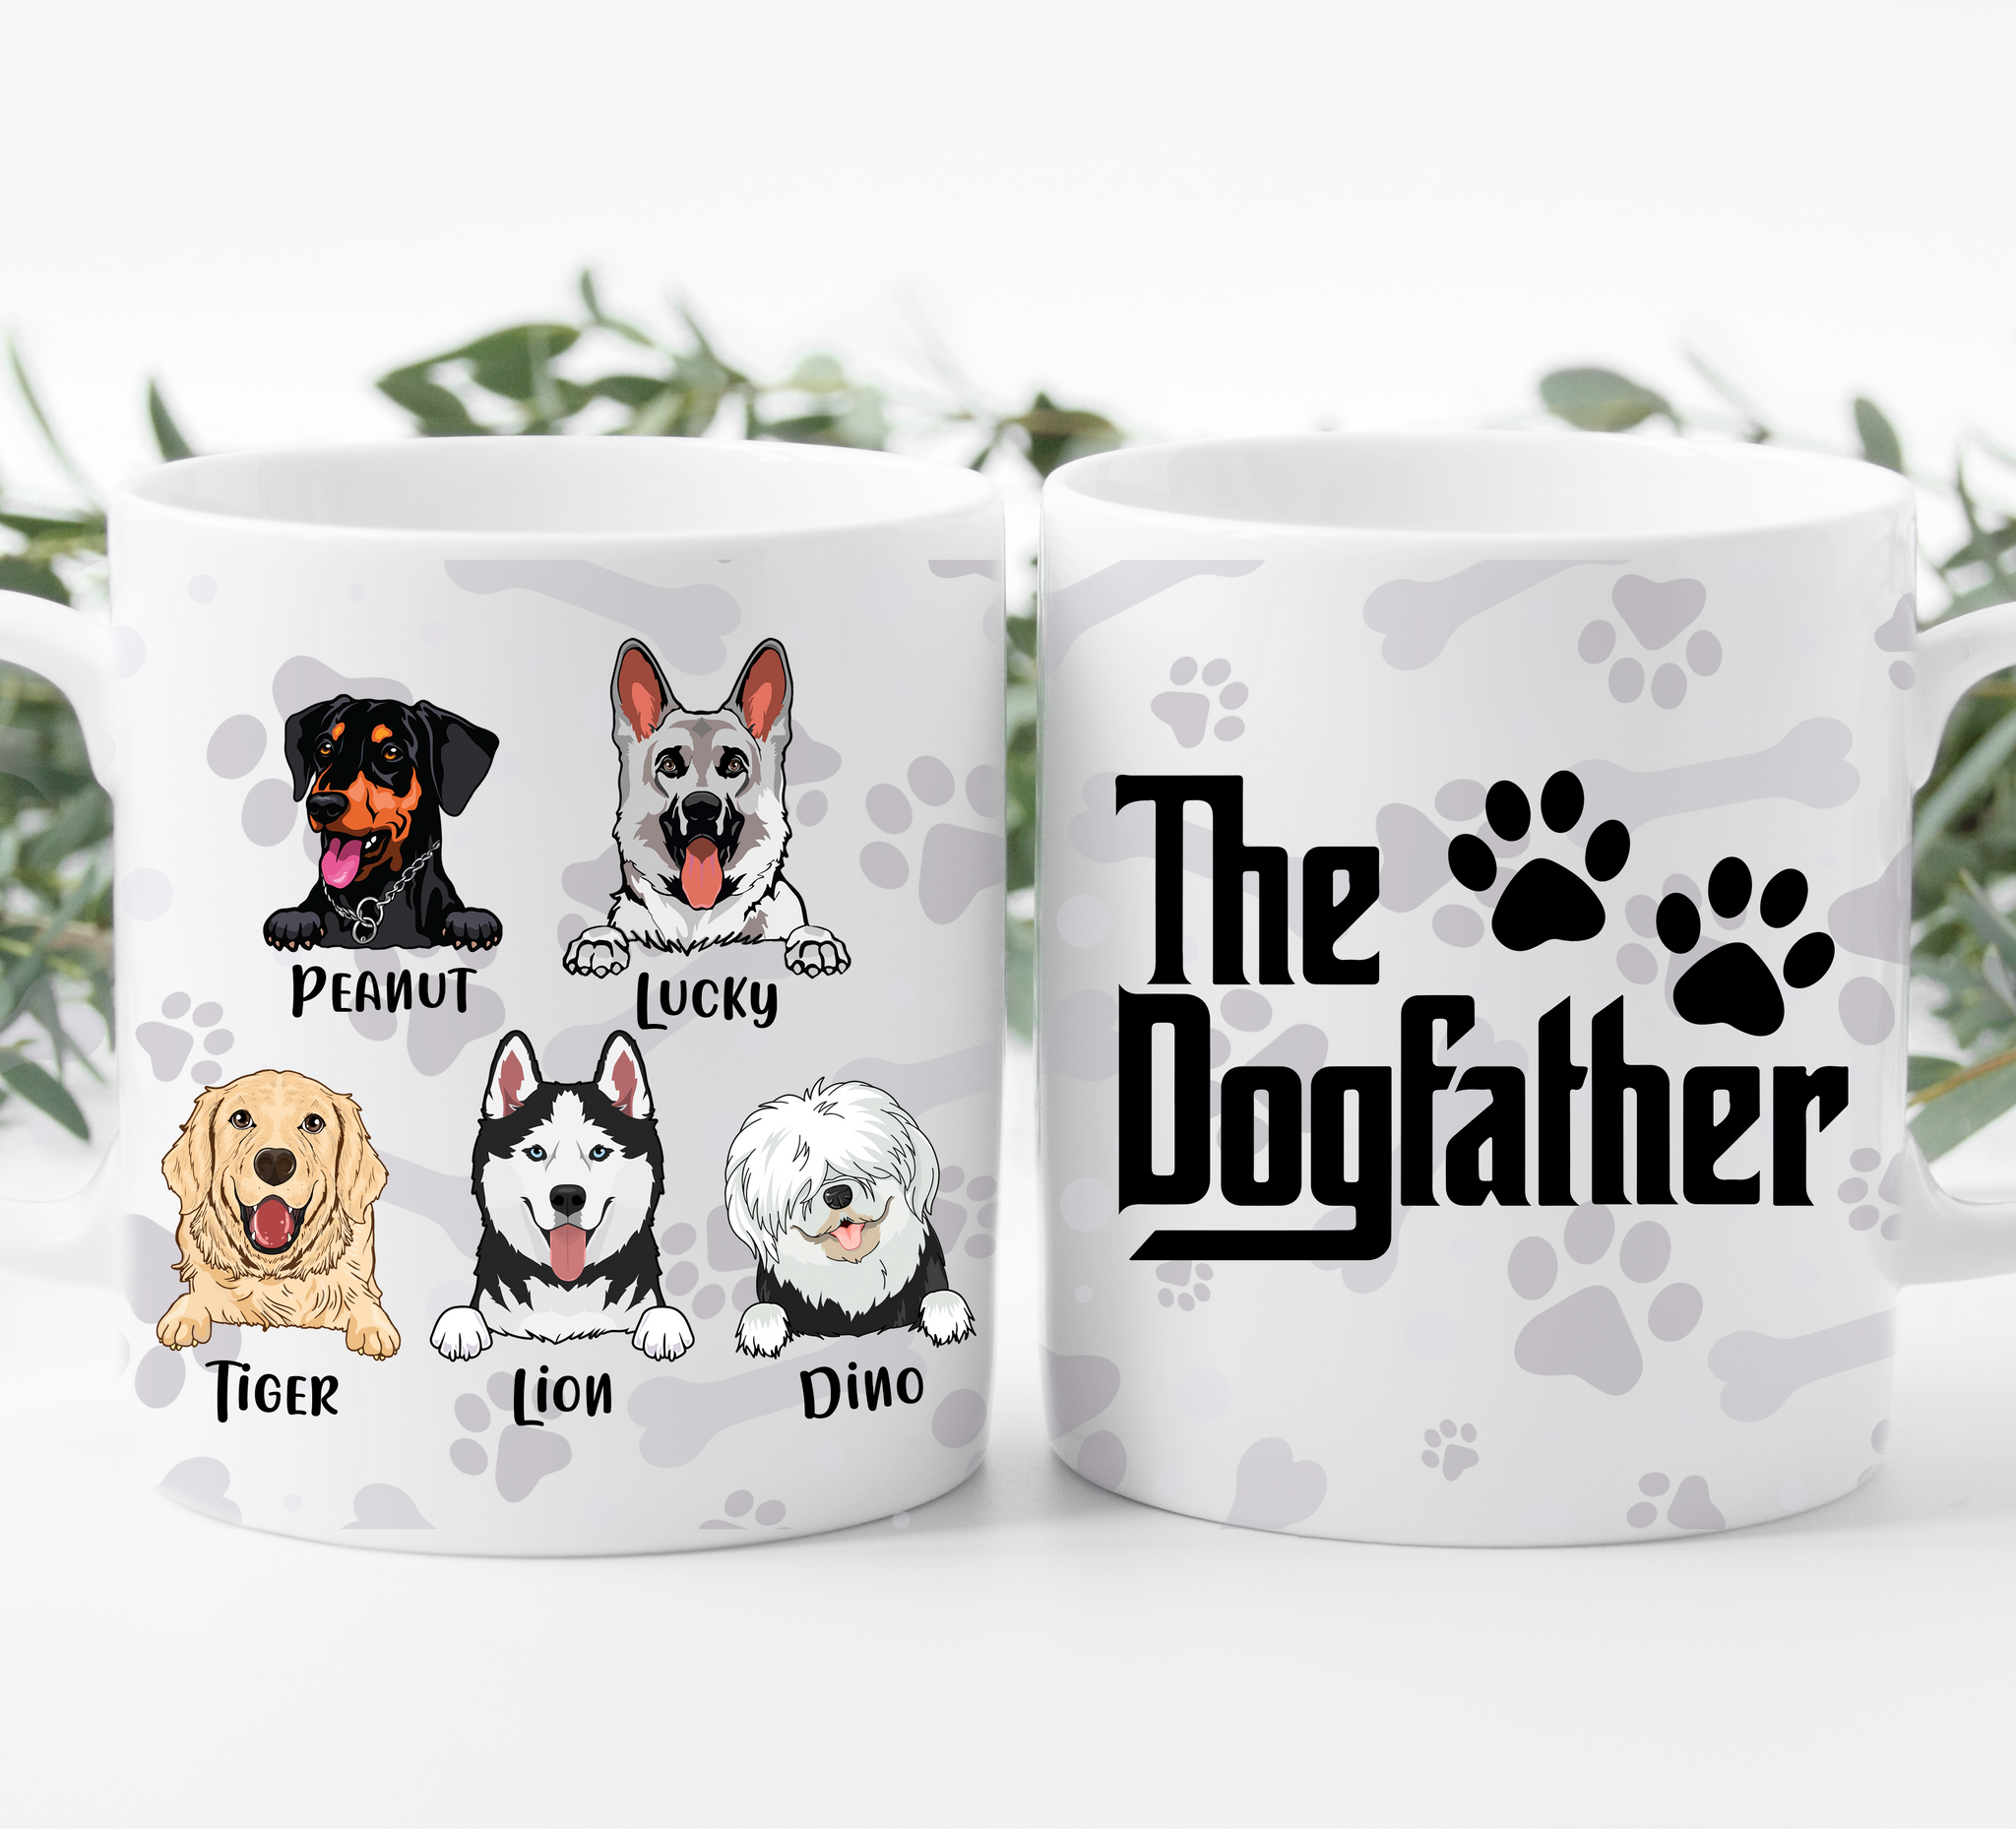 Dog Father- Dog Lover - Personalized Mug